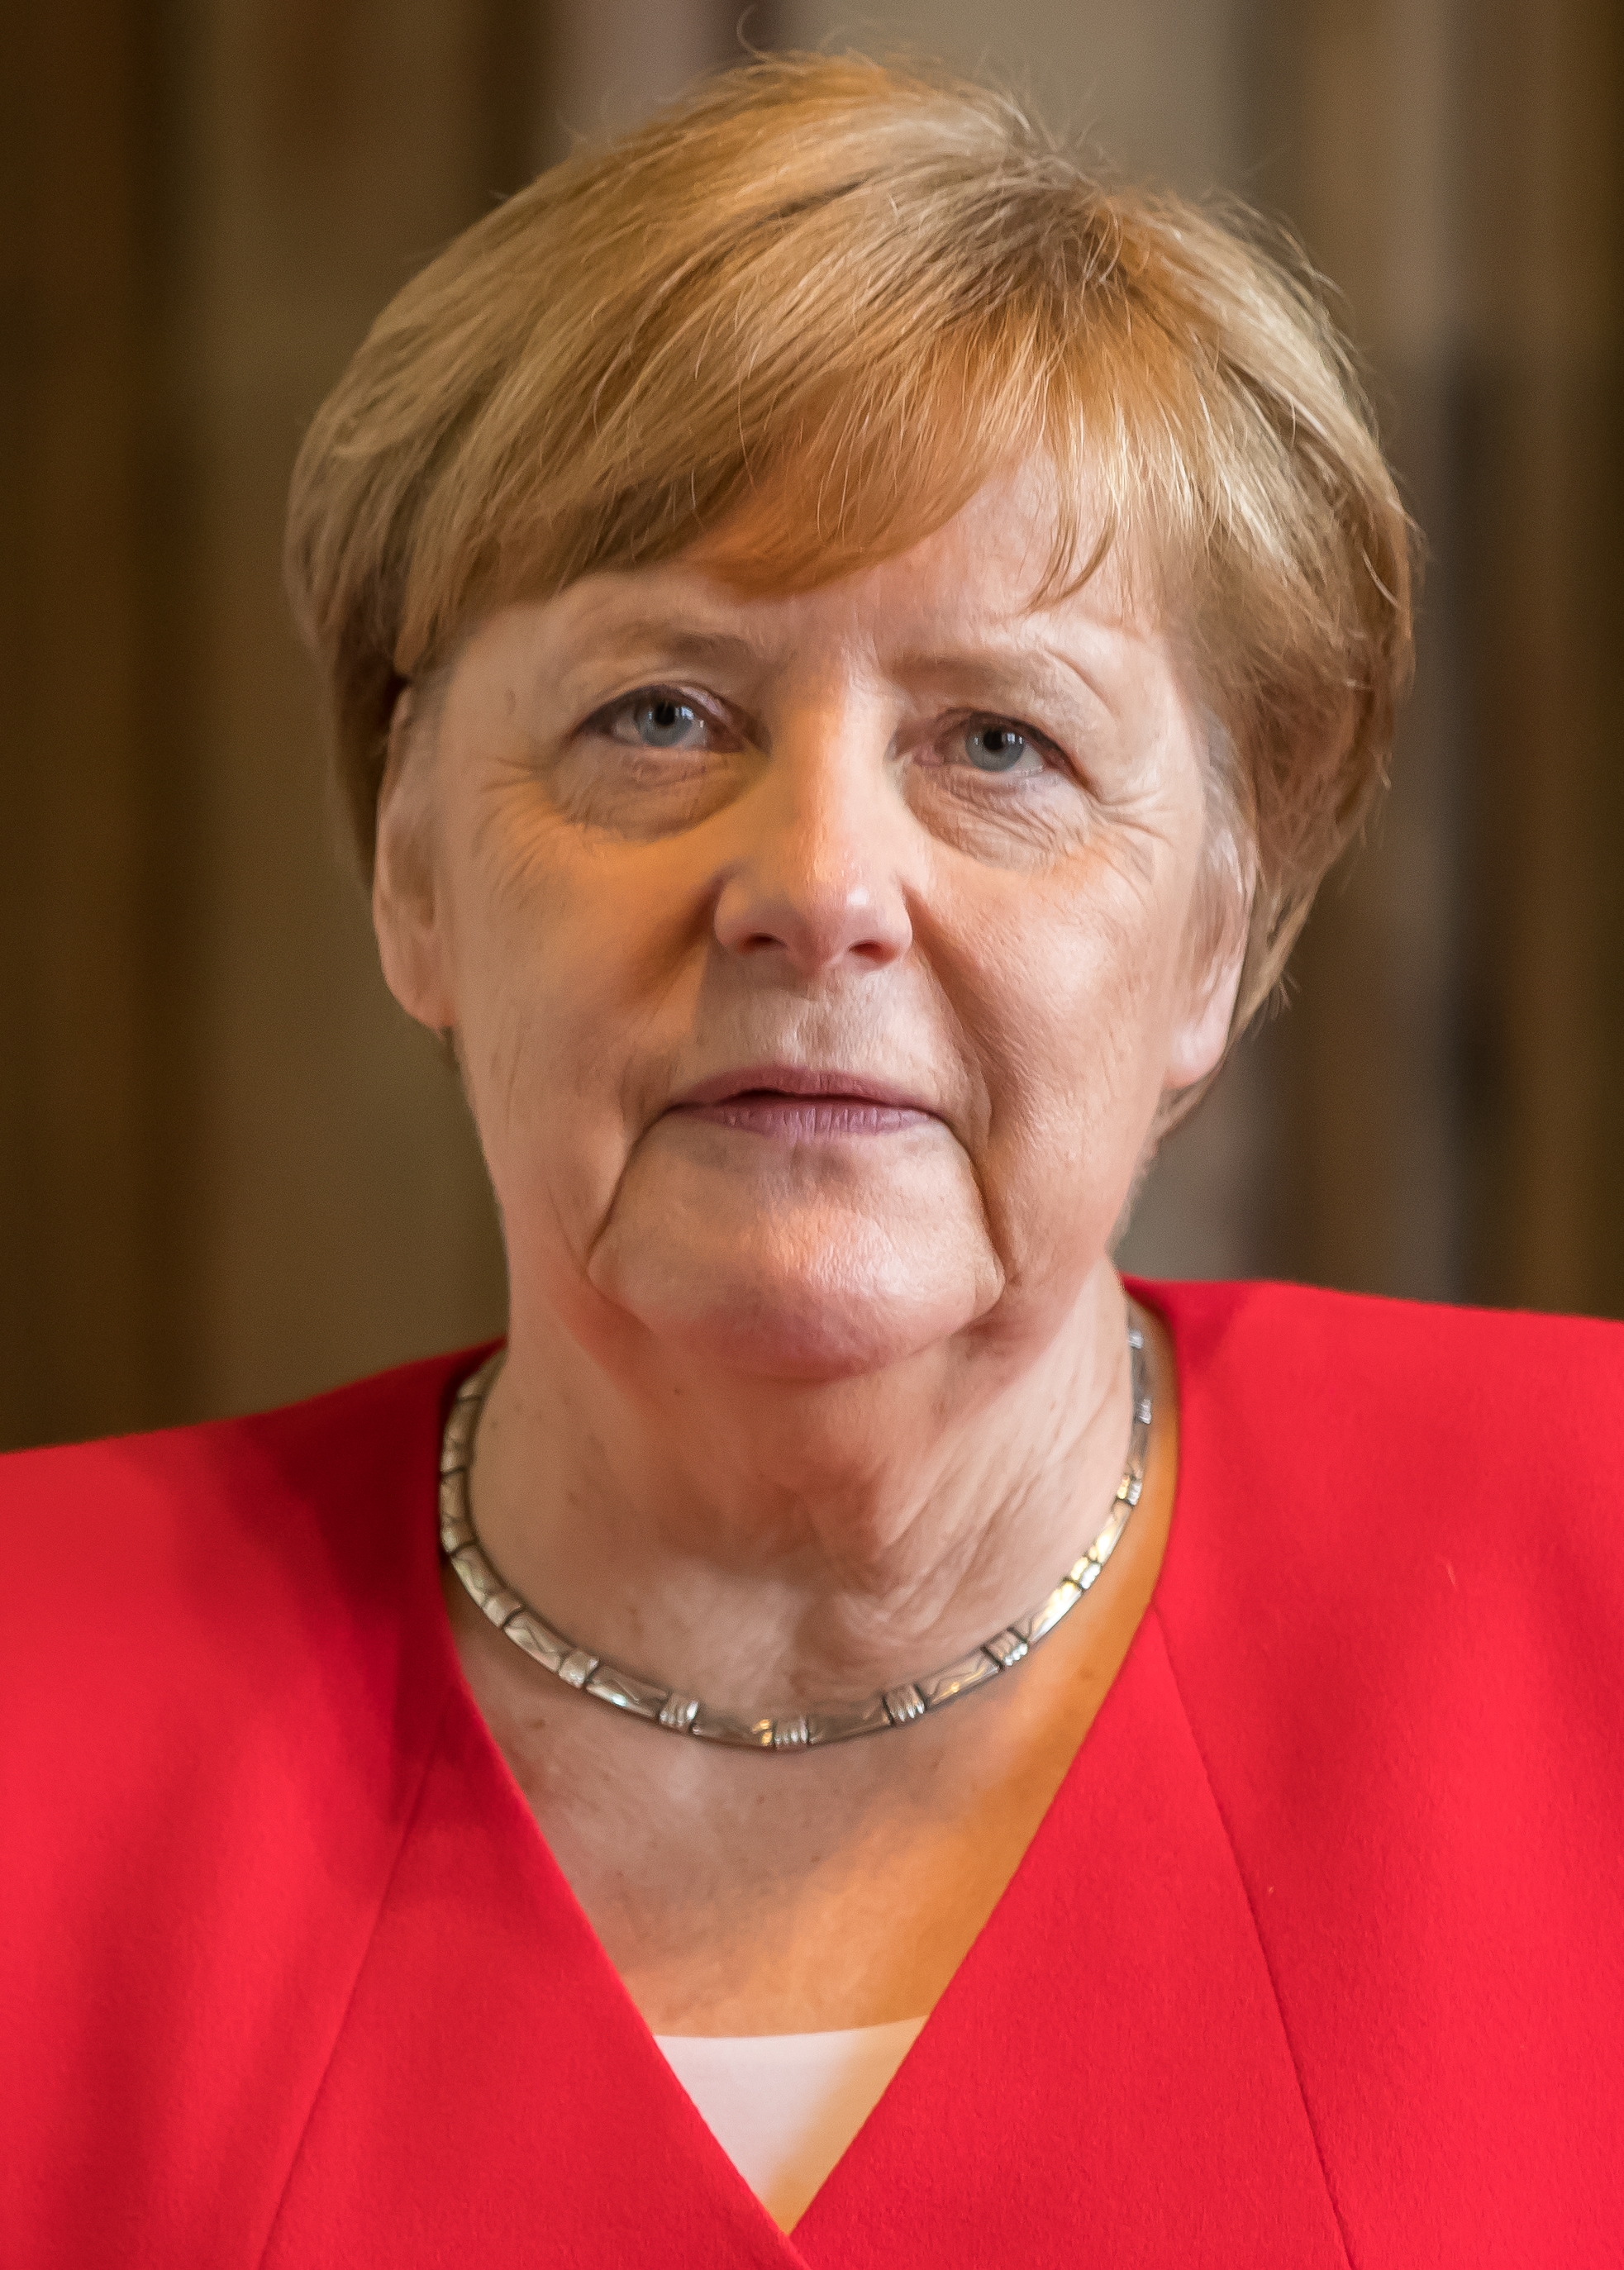 auteur Angela Merkel de la citation Dans l'équipe de football allemande, les joueurs de différents clubs doivent se poursuivre sur le terrain et hors du terrain. Dans la Grande Coalition, les démocrates chrétiens et les sociaux-démocrates sont assis dans le même bateau et doivent s'inscrire dans la même direction.